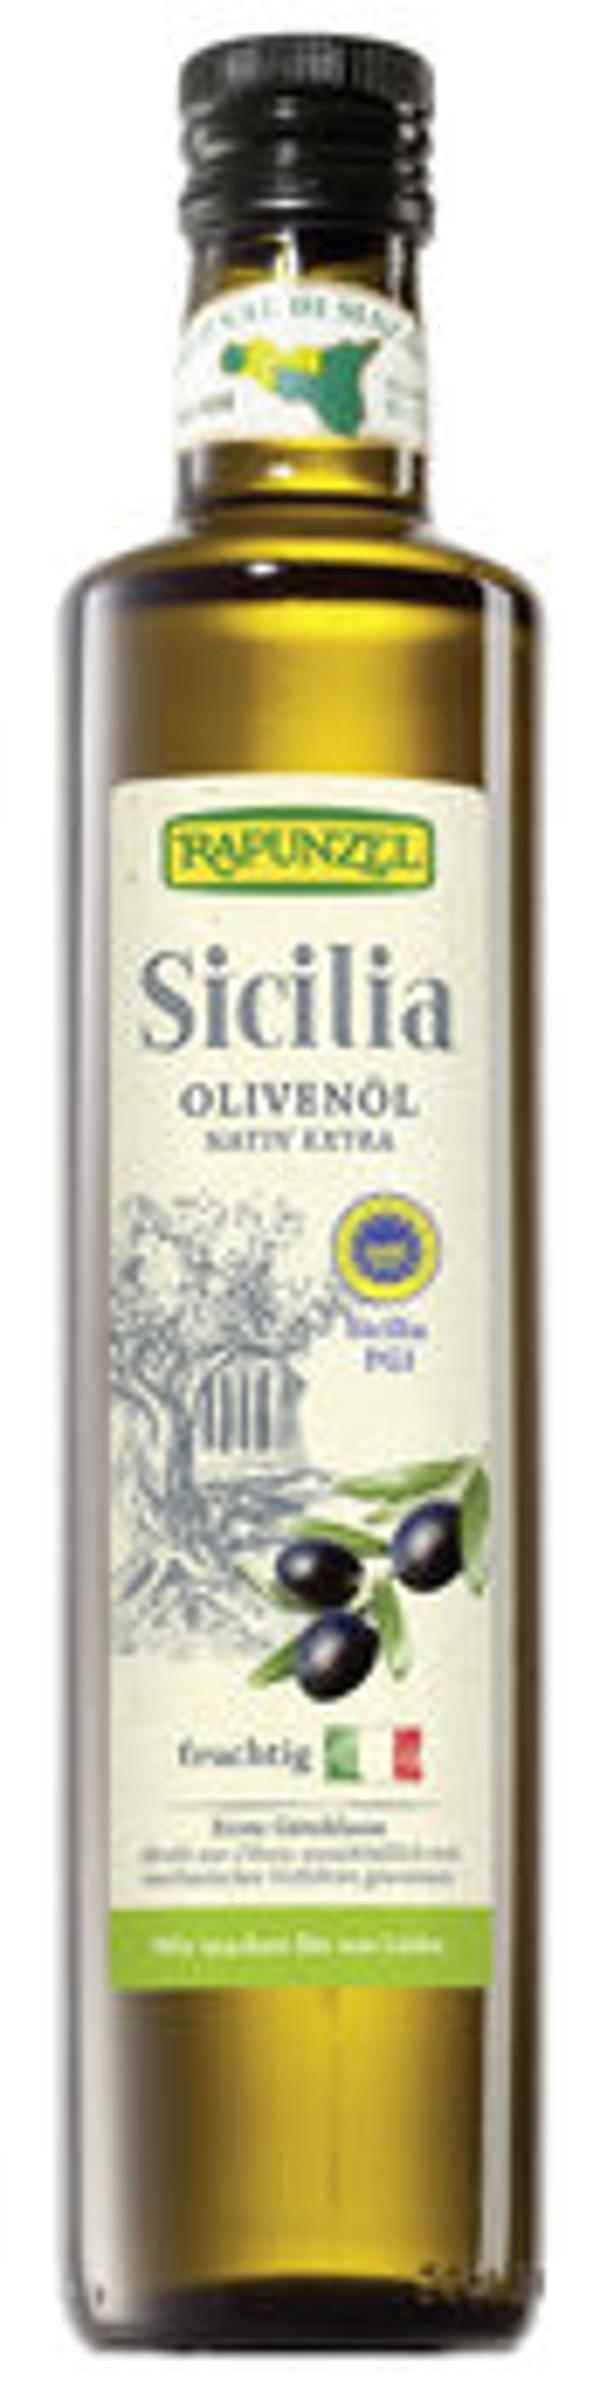 Produktfoto zu Olivenöl Sicilia DOP, 0,5l